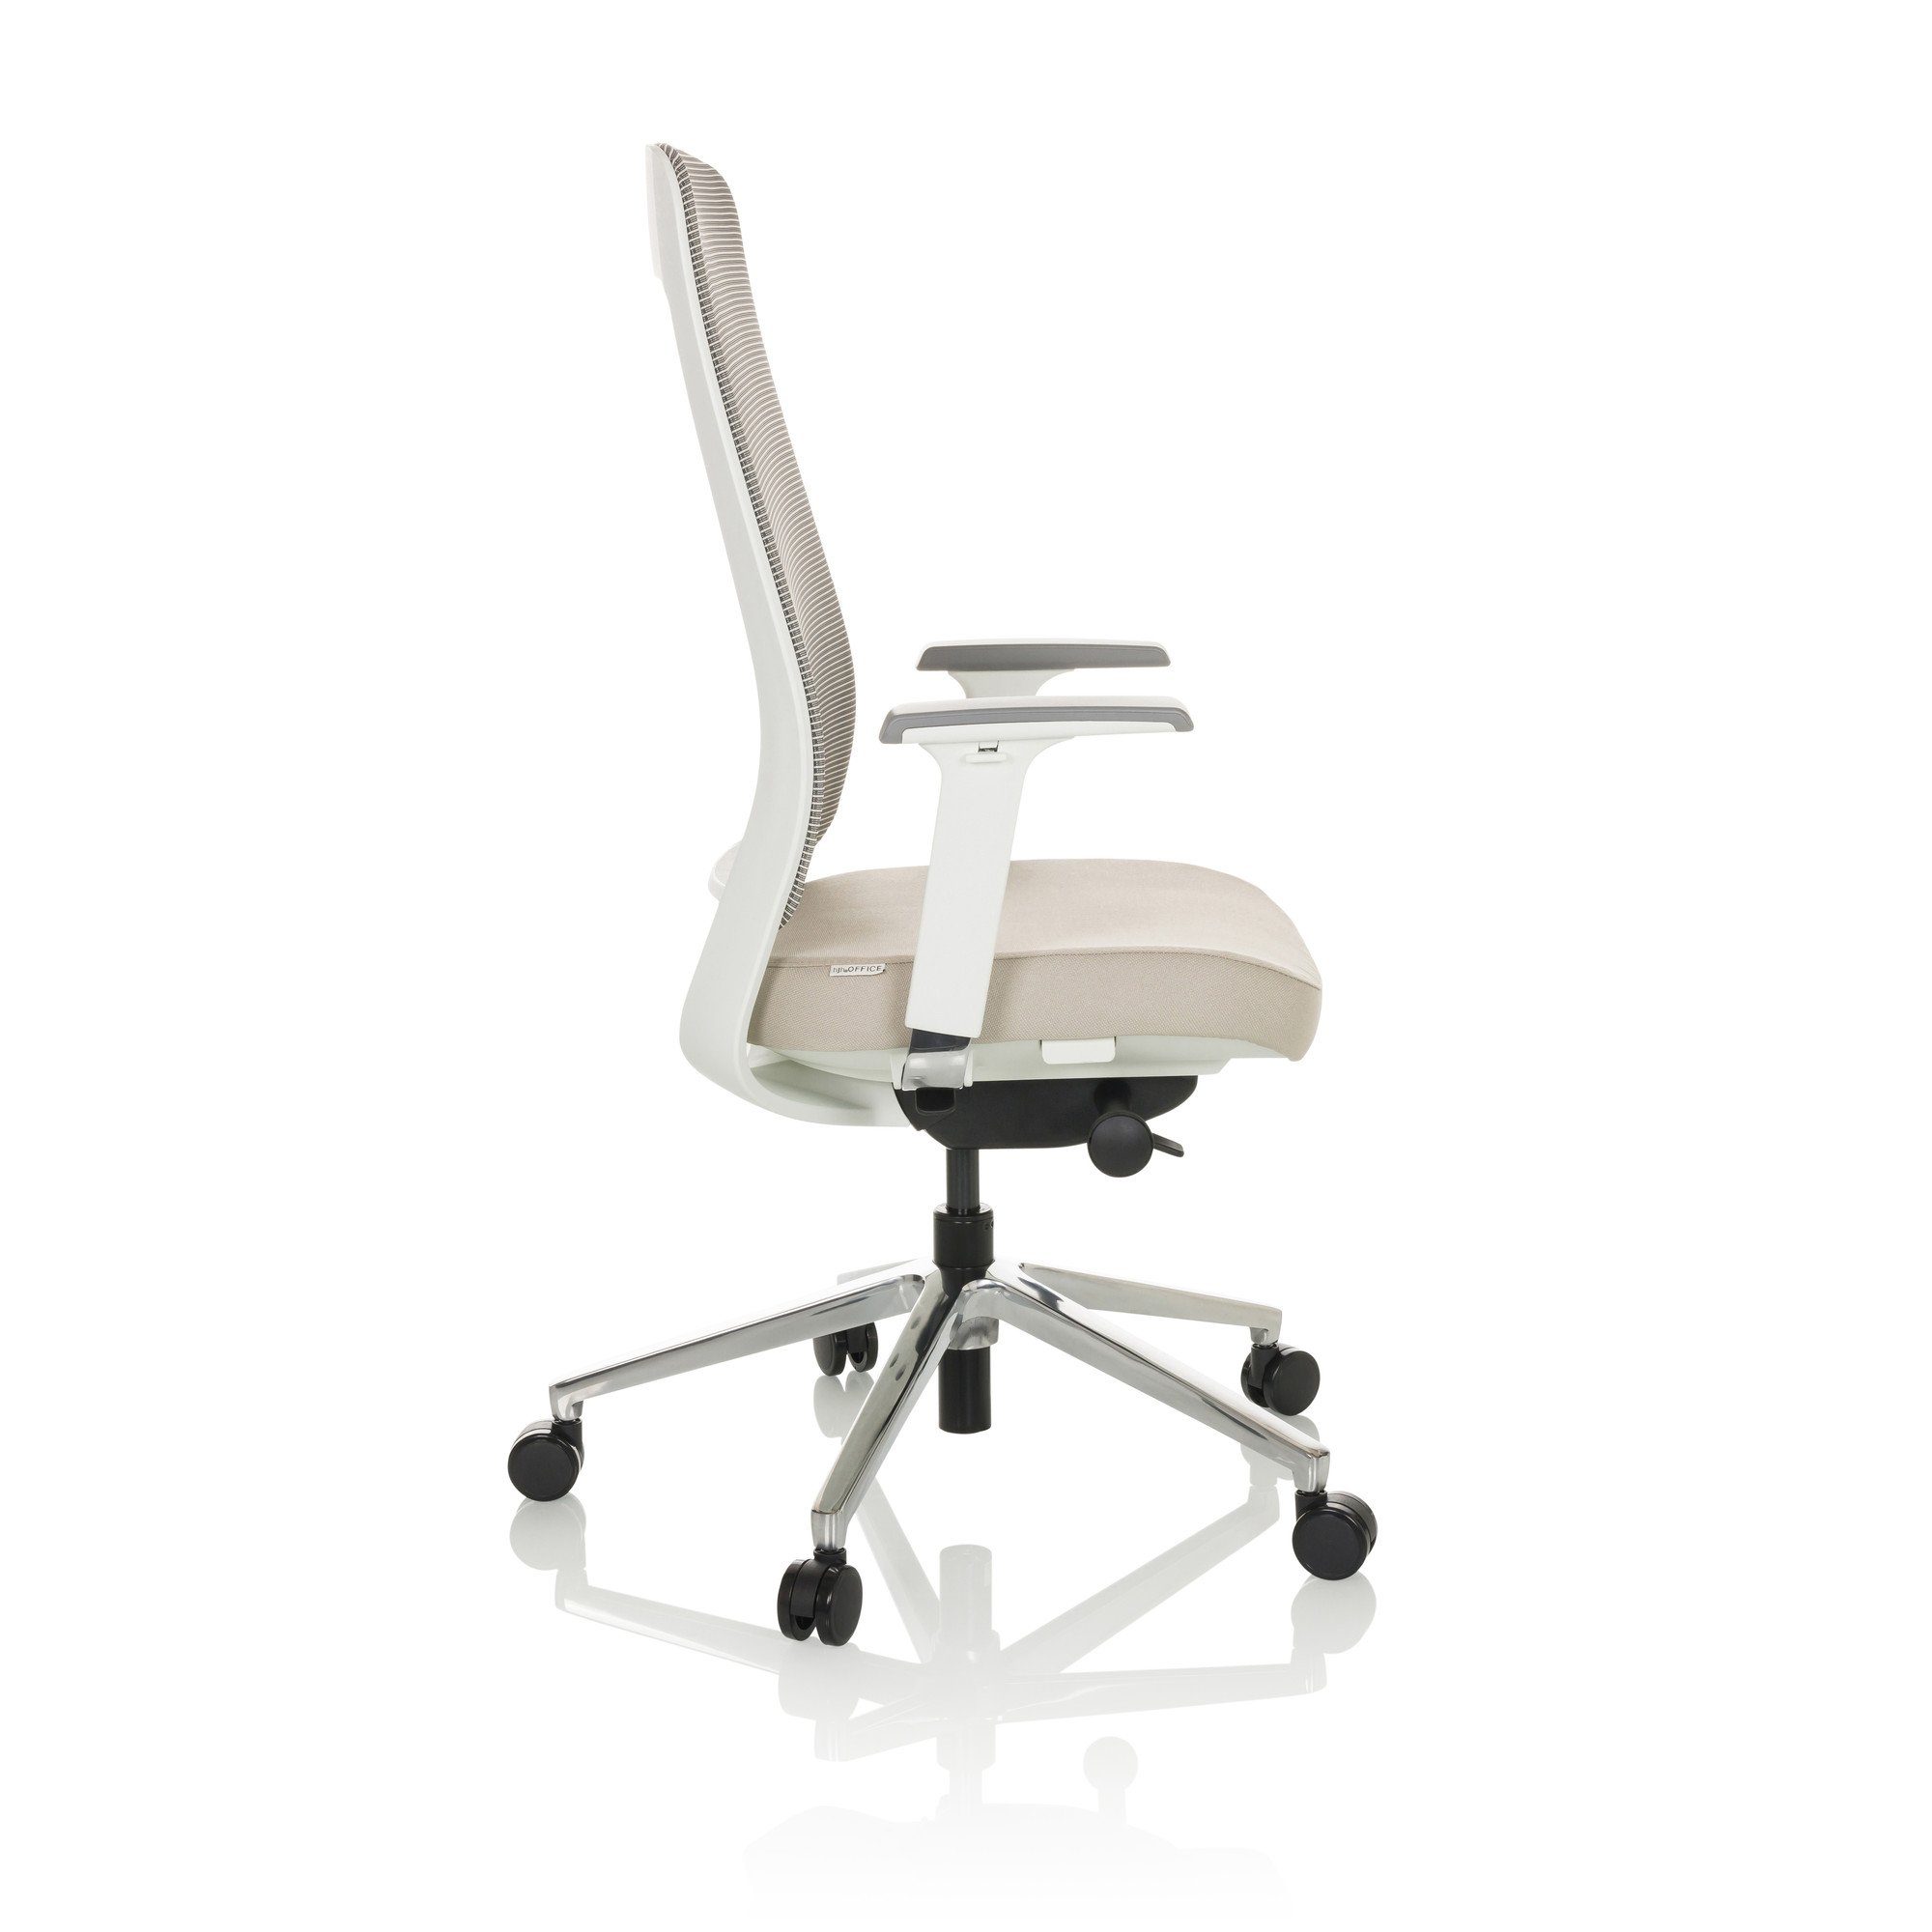 Stoff/Netzstoff CHIARO WHITE hjh (1 Schreibtischstuhl ergonomisch OFFICE Bürostuhl T2 Drehstuhl Beige/Grau St), Profi